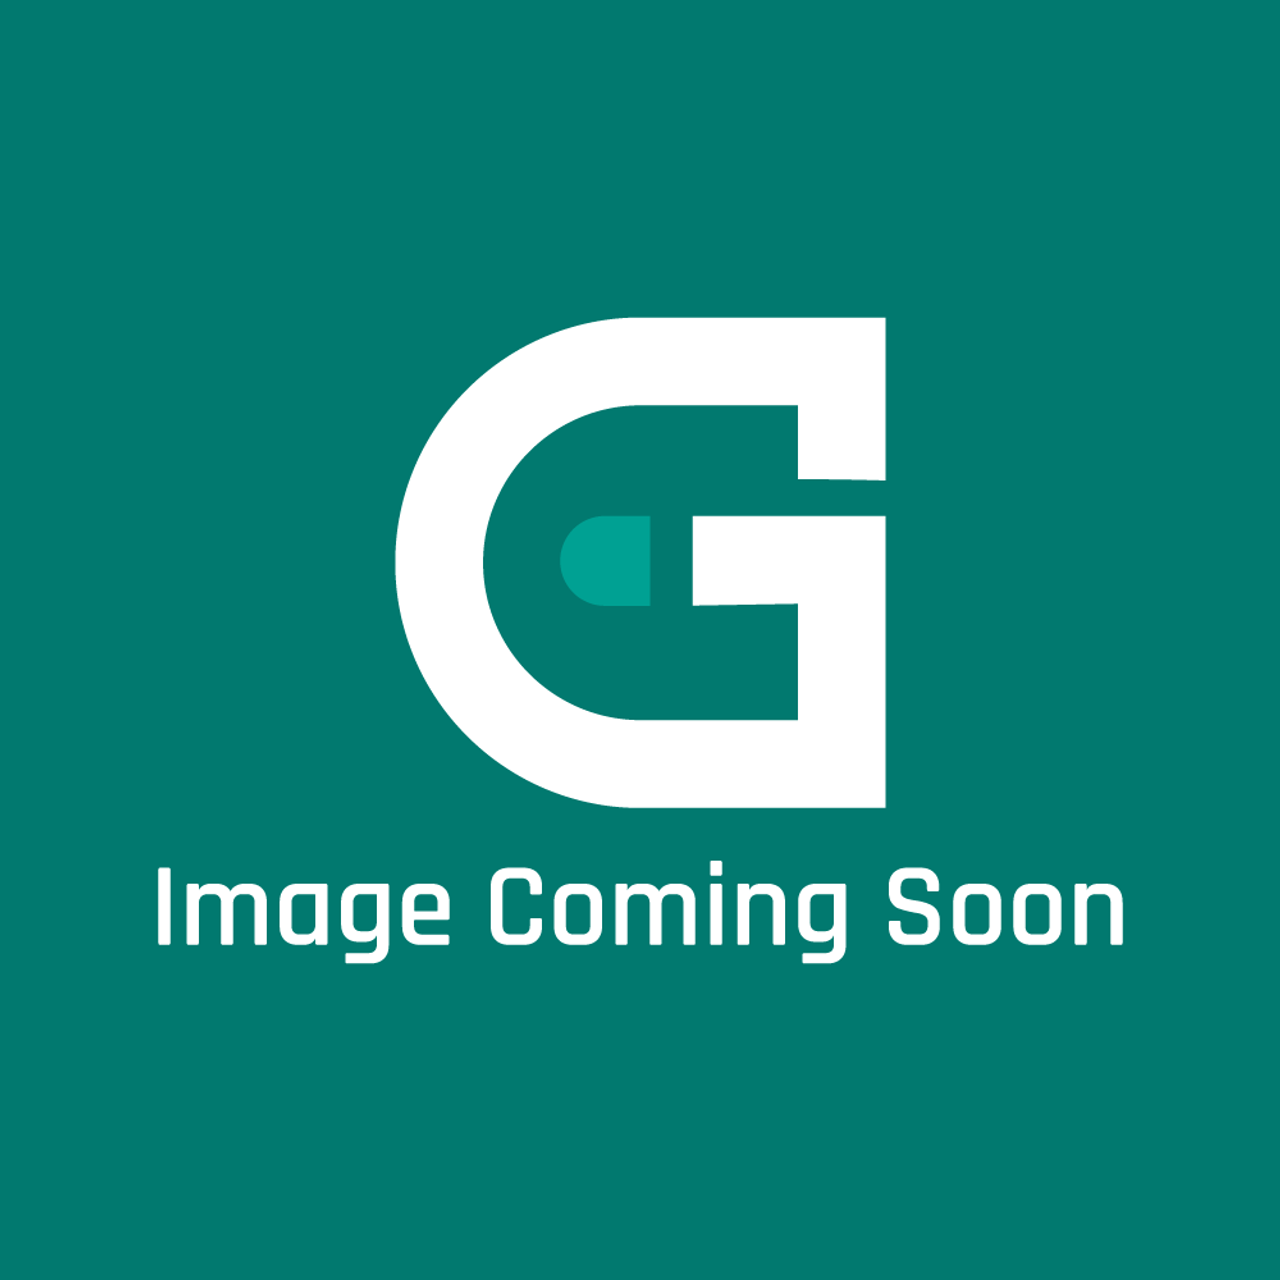 Viking PM110009 - BASE PLATE, GDAI-B061MRP0 - Image Coming Soon!